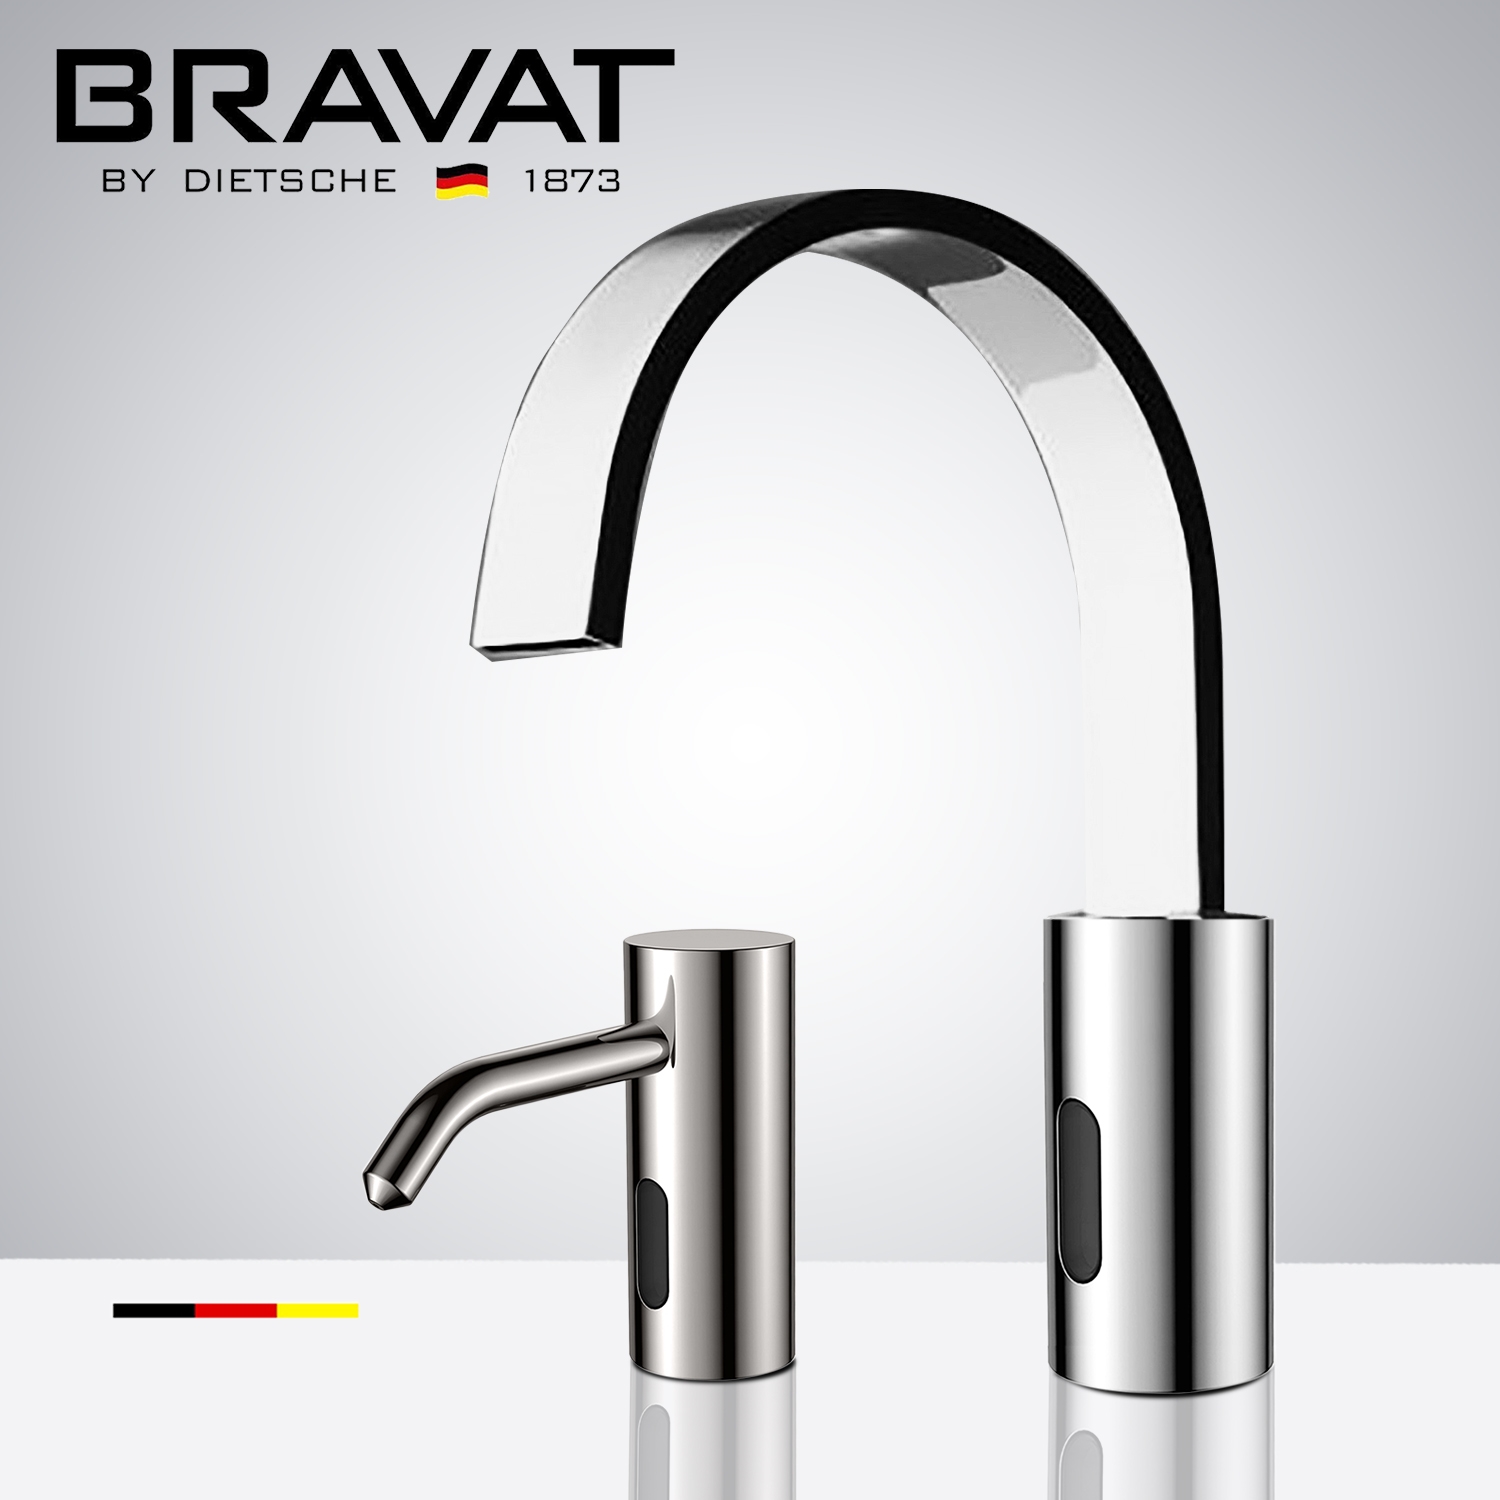 Fontana Bravat Freestanding Chrome Finish Automatic Commercial Sensor Faucet & Automatic Soap Dispenser